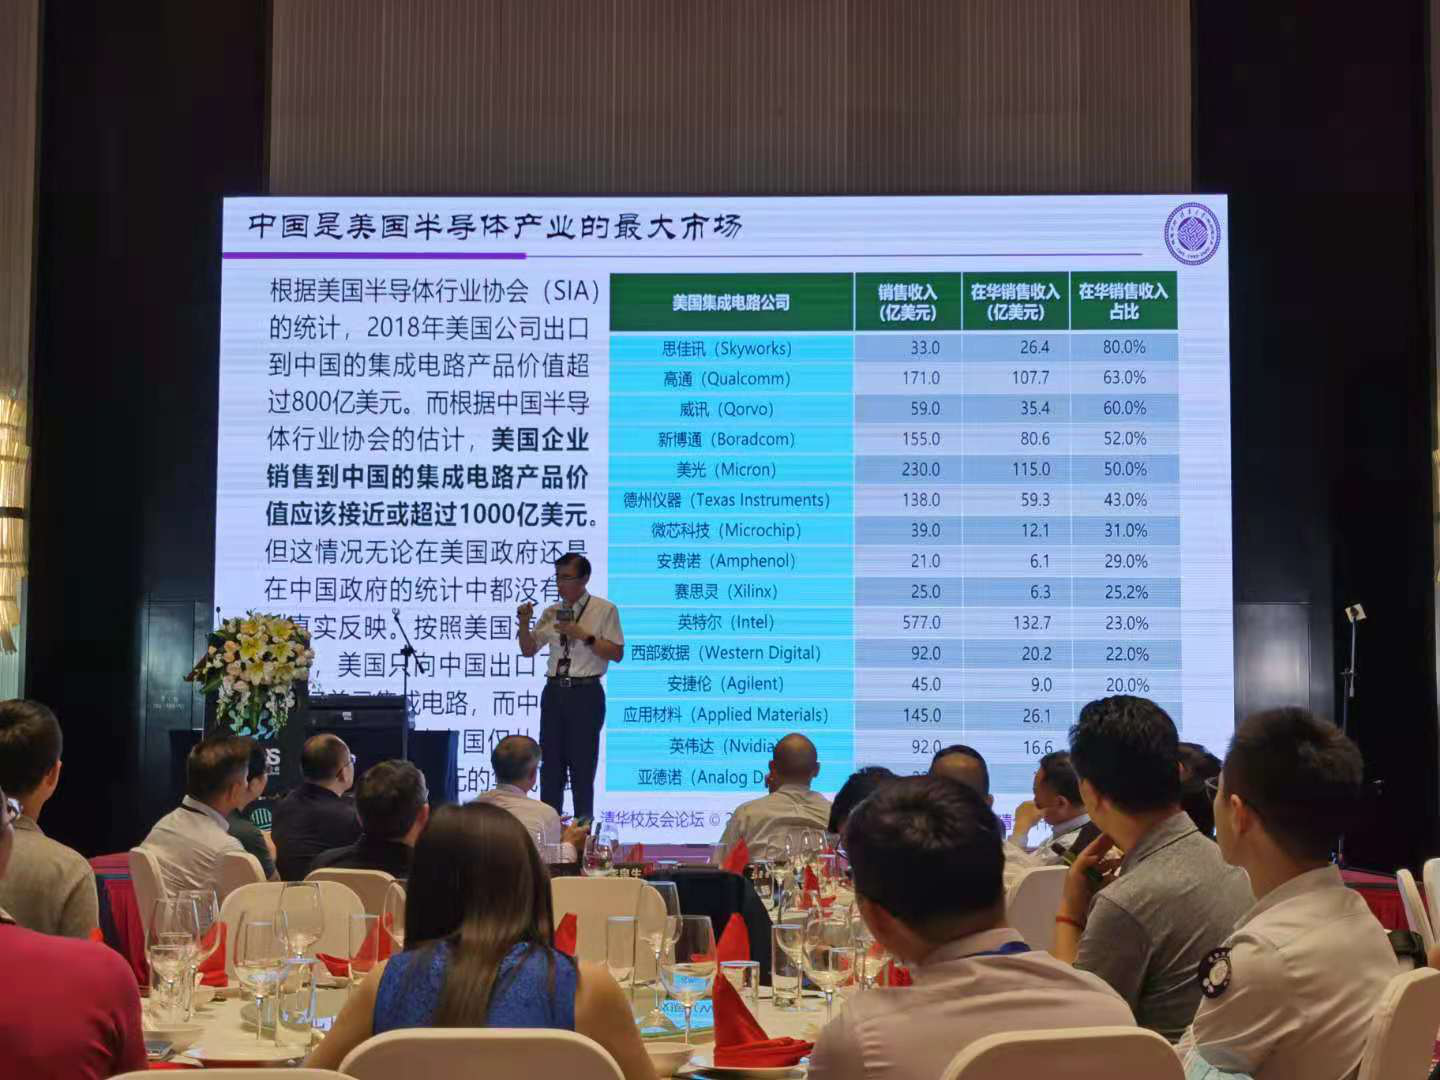 魏少军教授说中国是美国半导体产业的最大市场